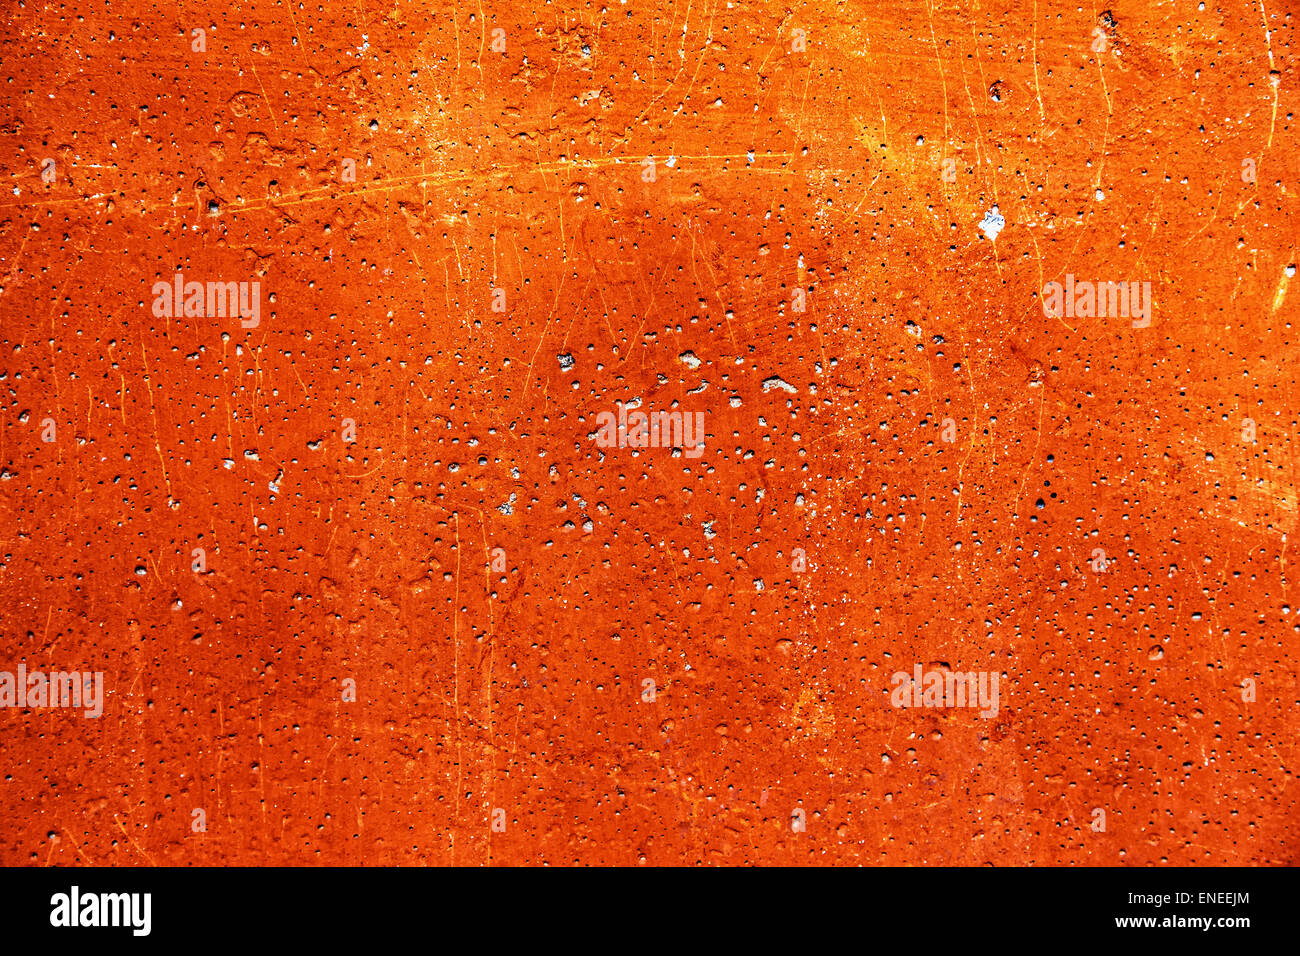 Grunge gesso cemento o calcestruzzo texture di parete di colore arancione con graffi Foto Stock